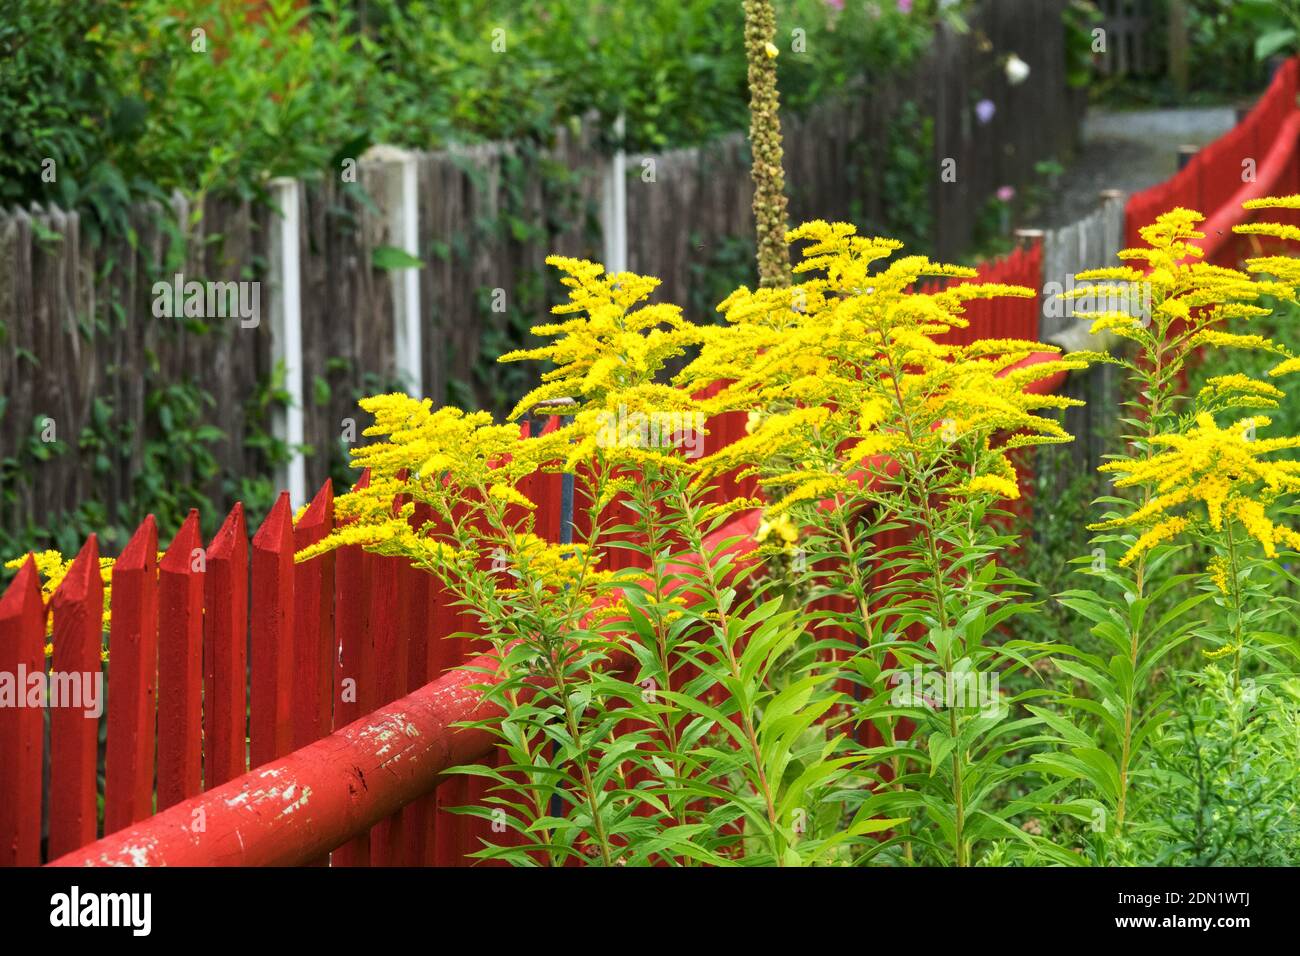 Solidago, comunemente chiamato goldenrods che crescono nel giardino dal recinto del giardino dipinto di rosso in legno Foto Stock